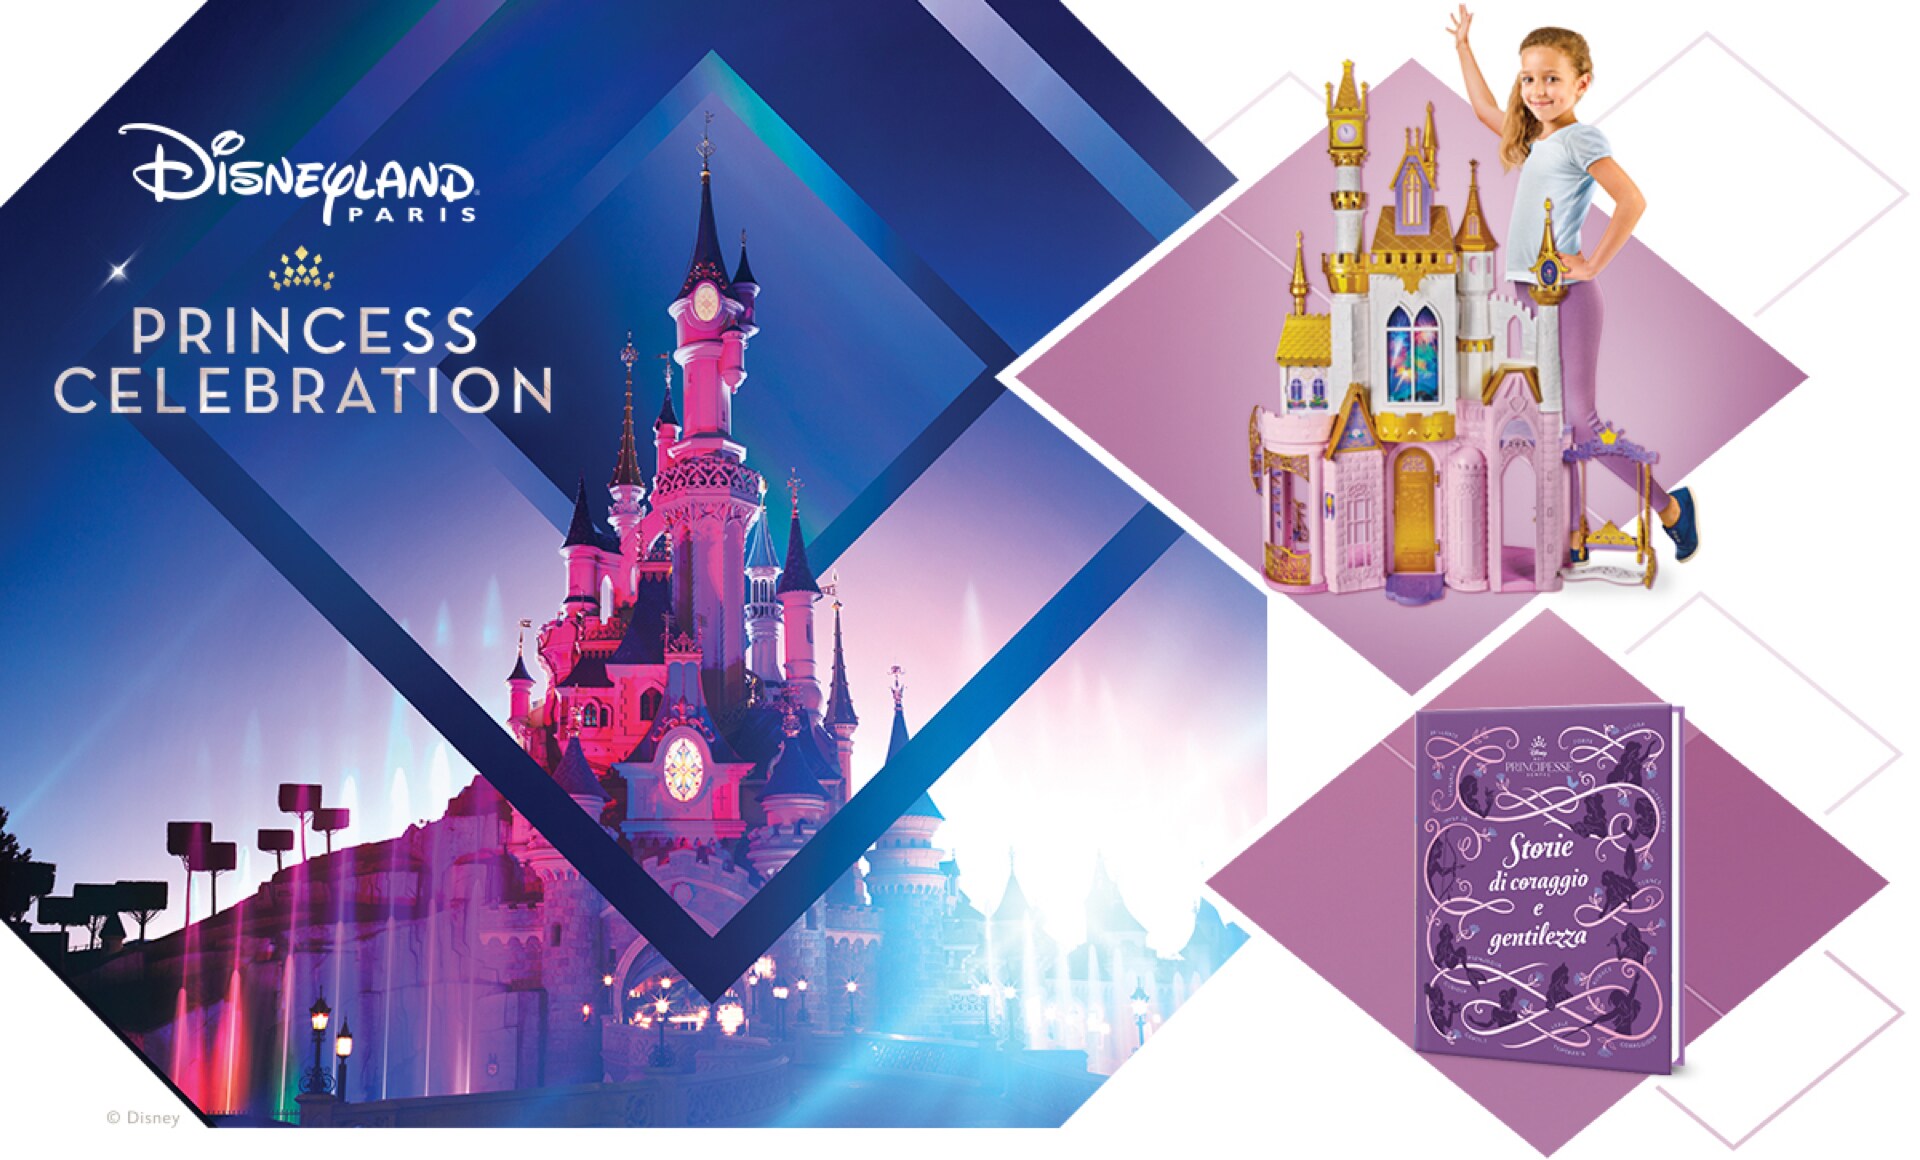 Premi del concorso: viaggio a Disneyland® Paris, Castello delle principesse Hasbro e libri delle principesse Giunti.